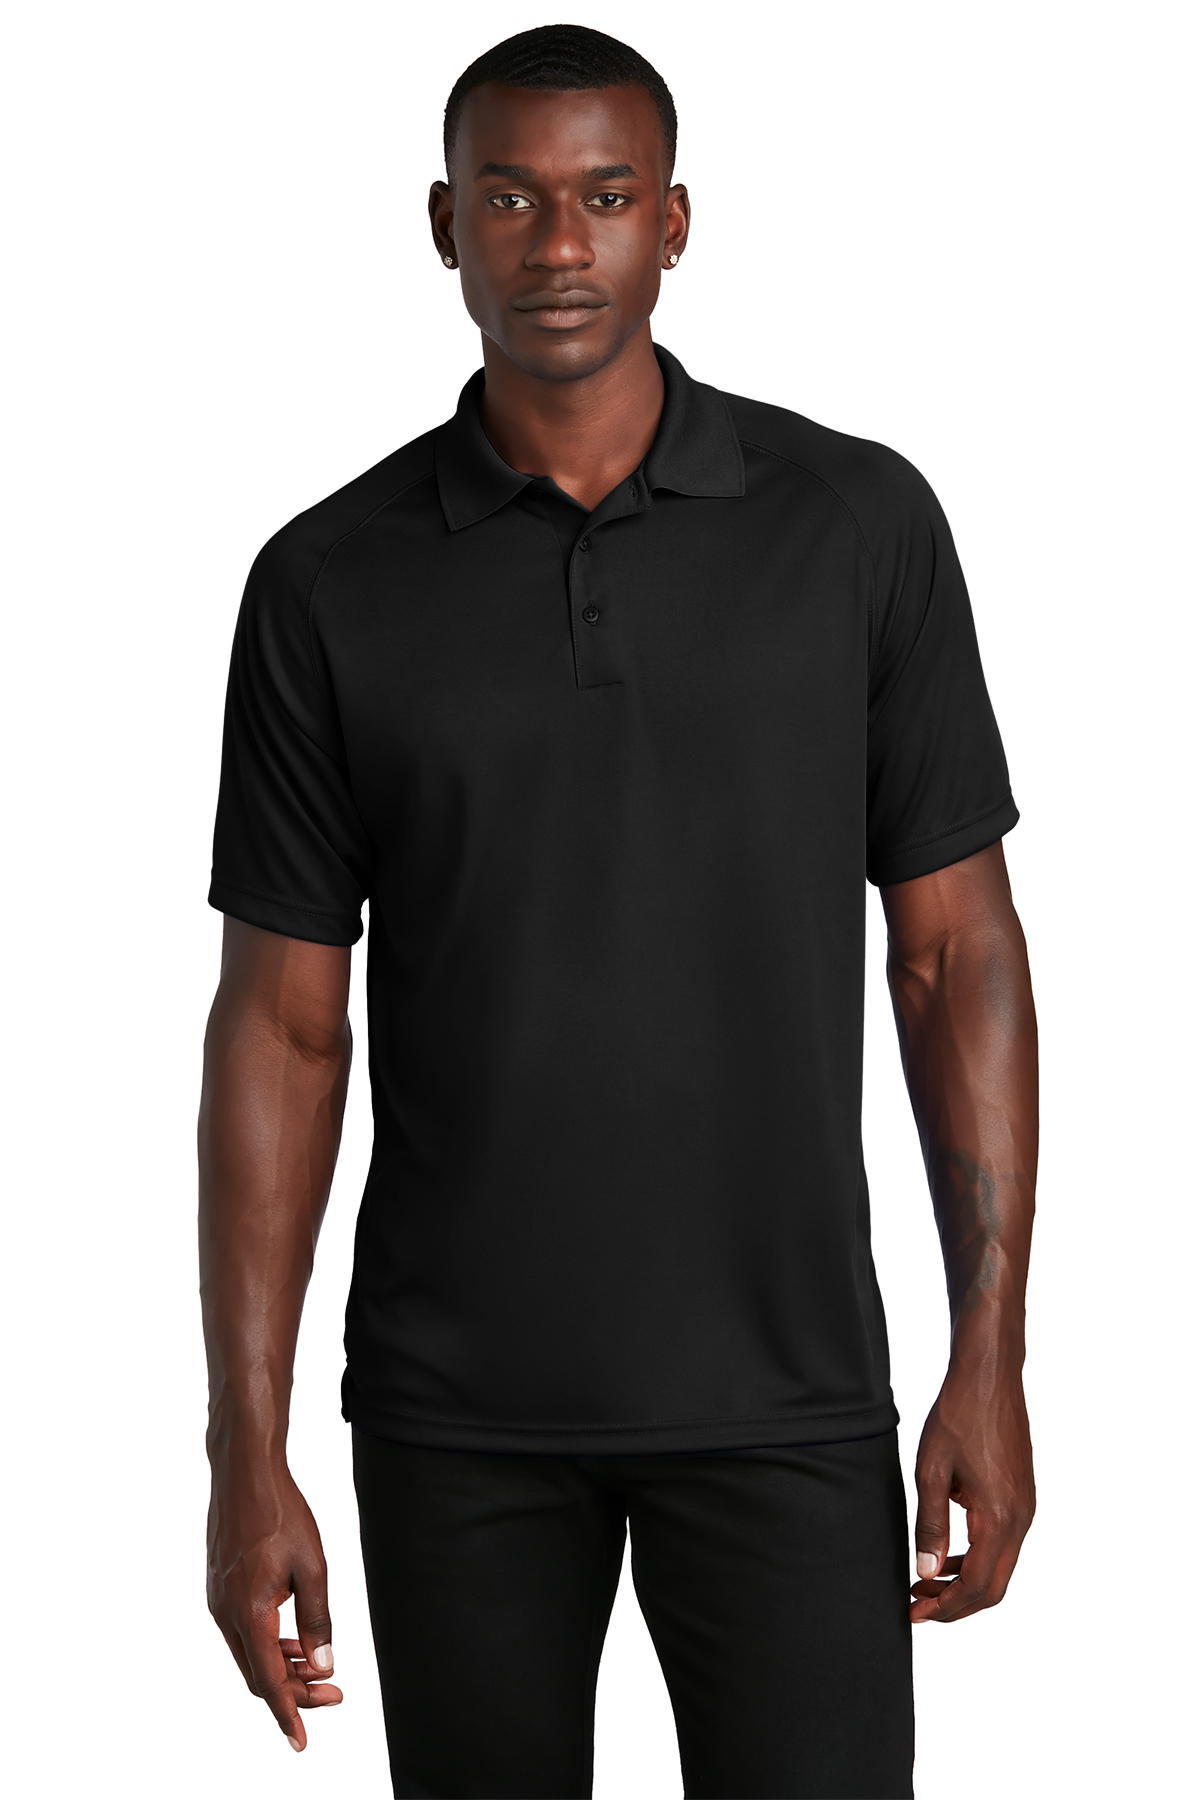 Tek Gear Dry Tek Mens Black Activewear Shirt Size Medium Polyester Blend